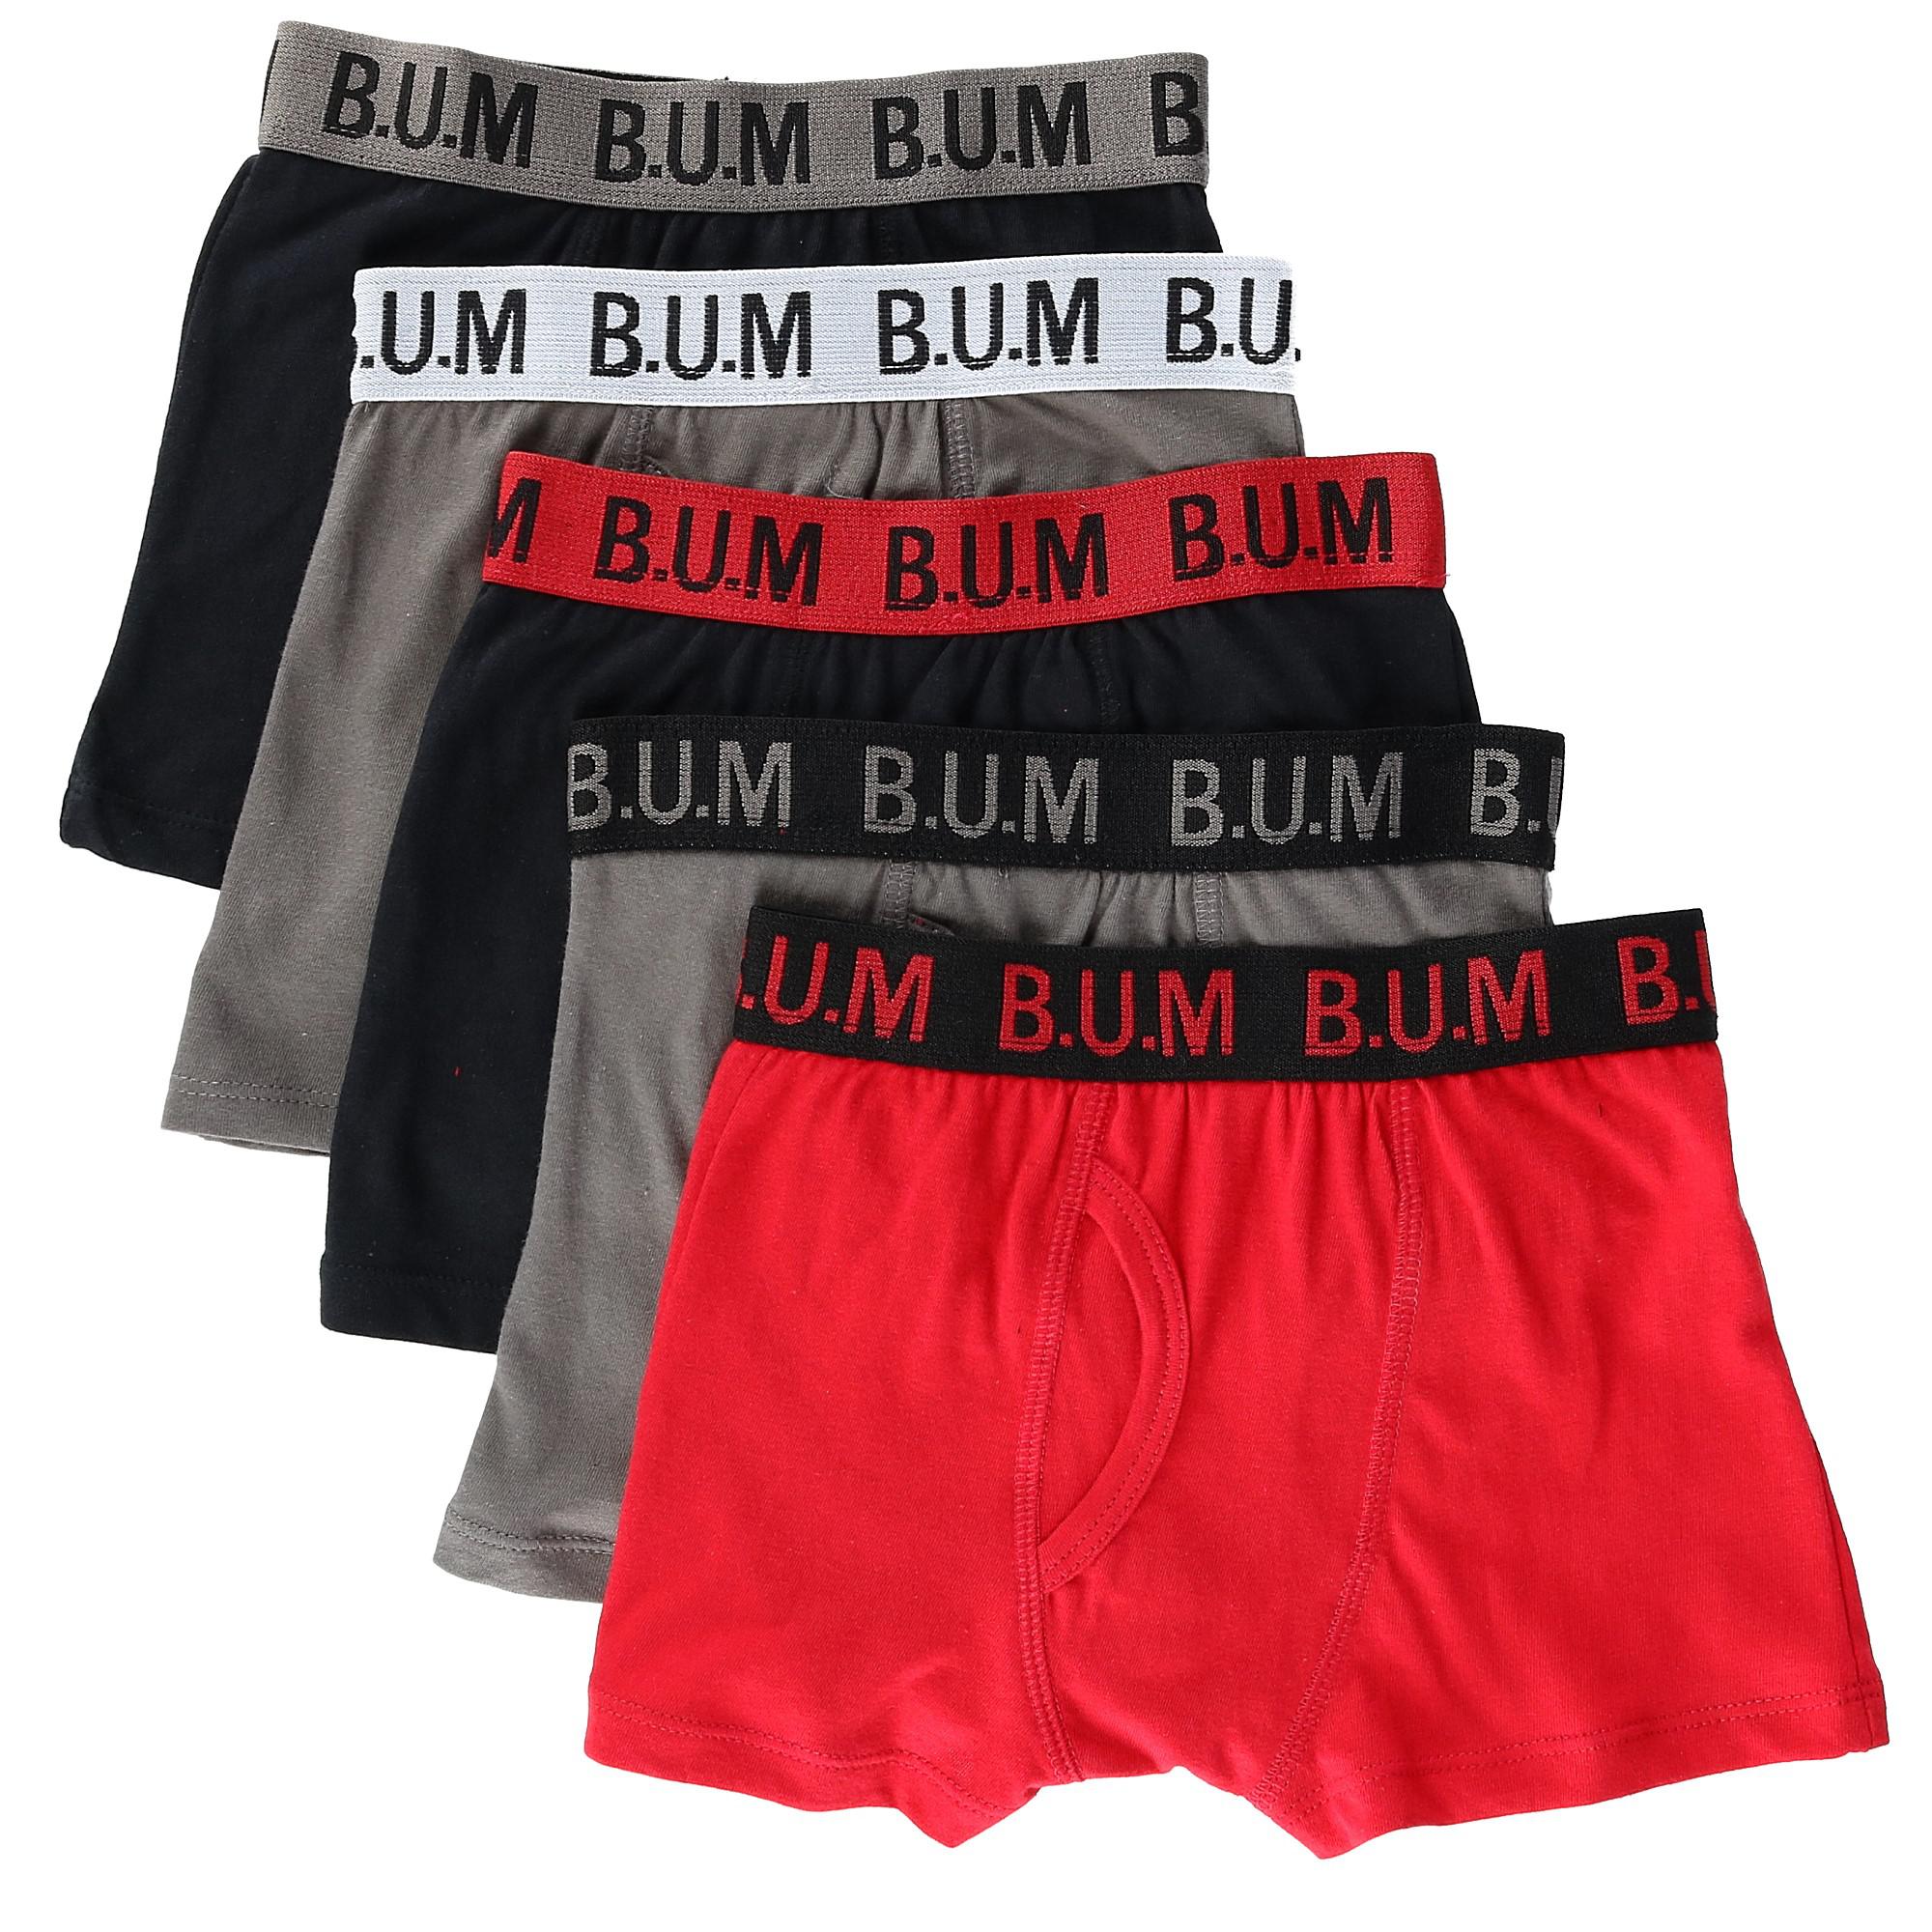 B.U.M. Boy's Boxer Brief Underwear (5 Pair Pack)